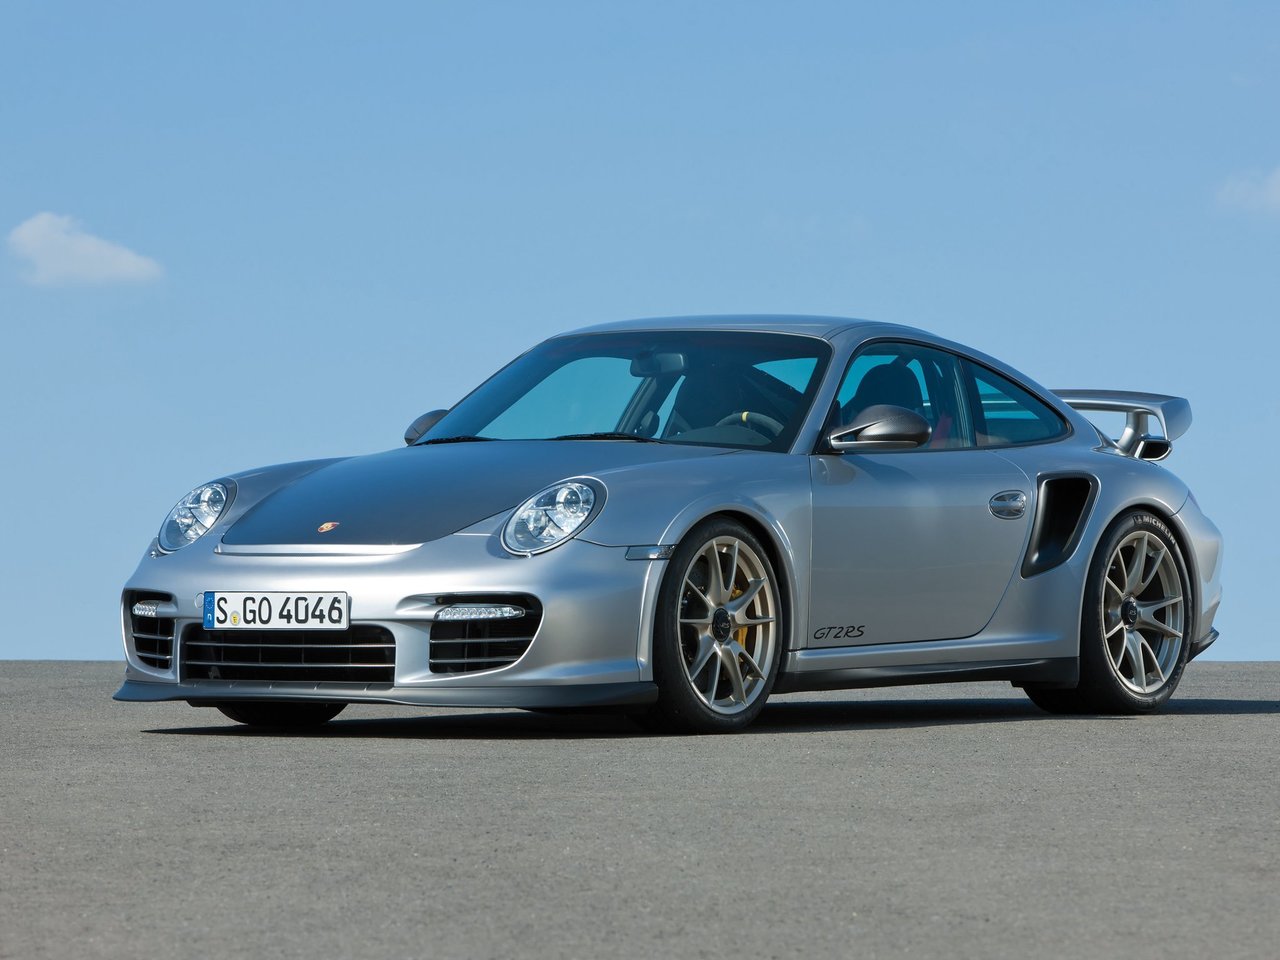 Расход газа одной комплектации купе RS Porsche 911 GT2. Разница стоимости заправки газом и бензином. Автономный пробег до и после установки ГБО.